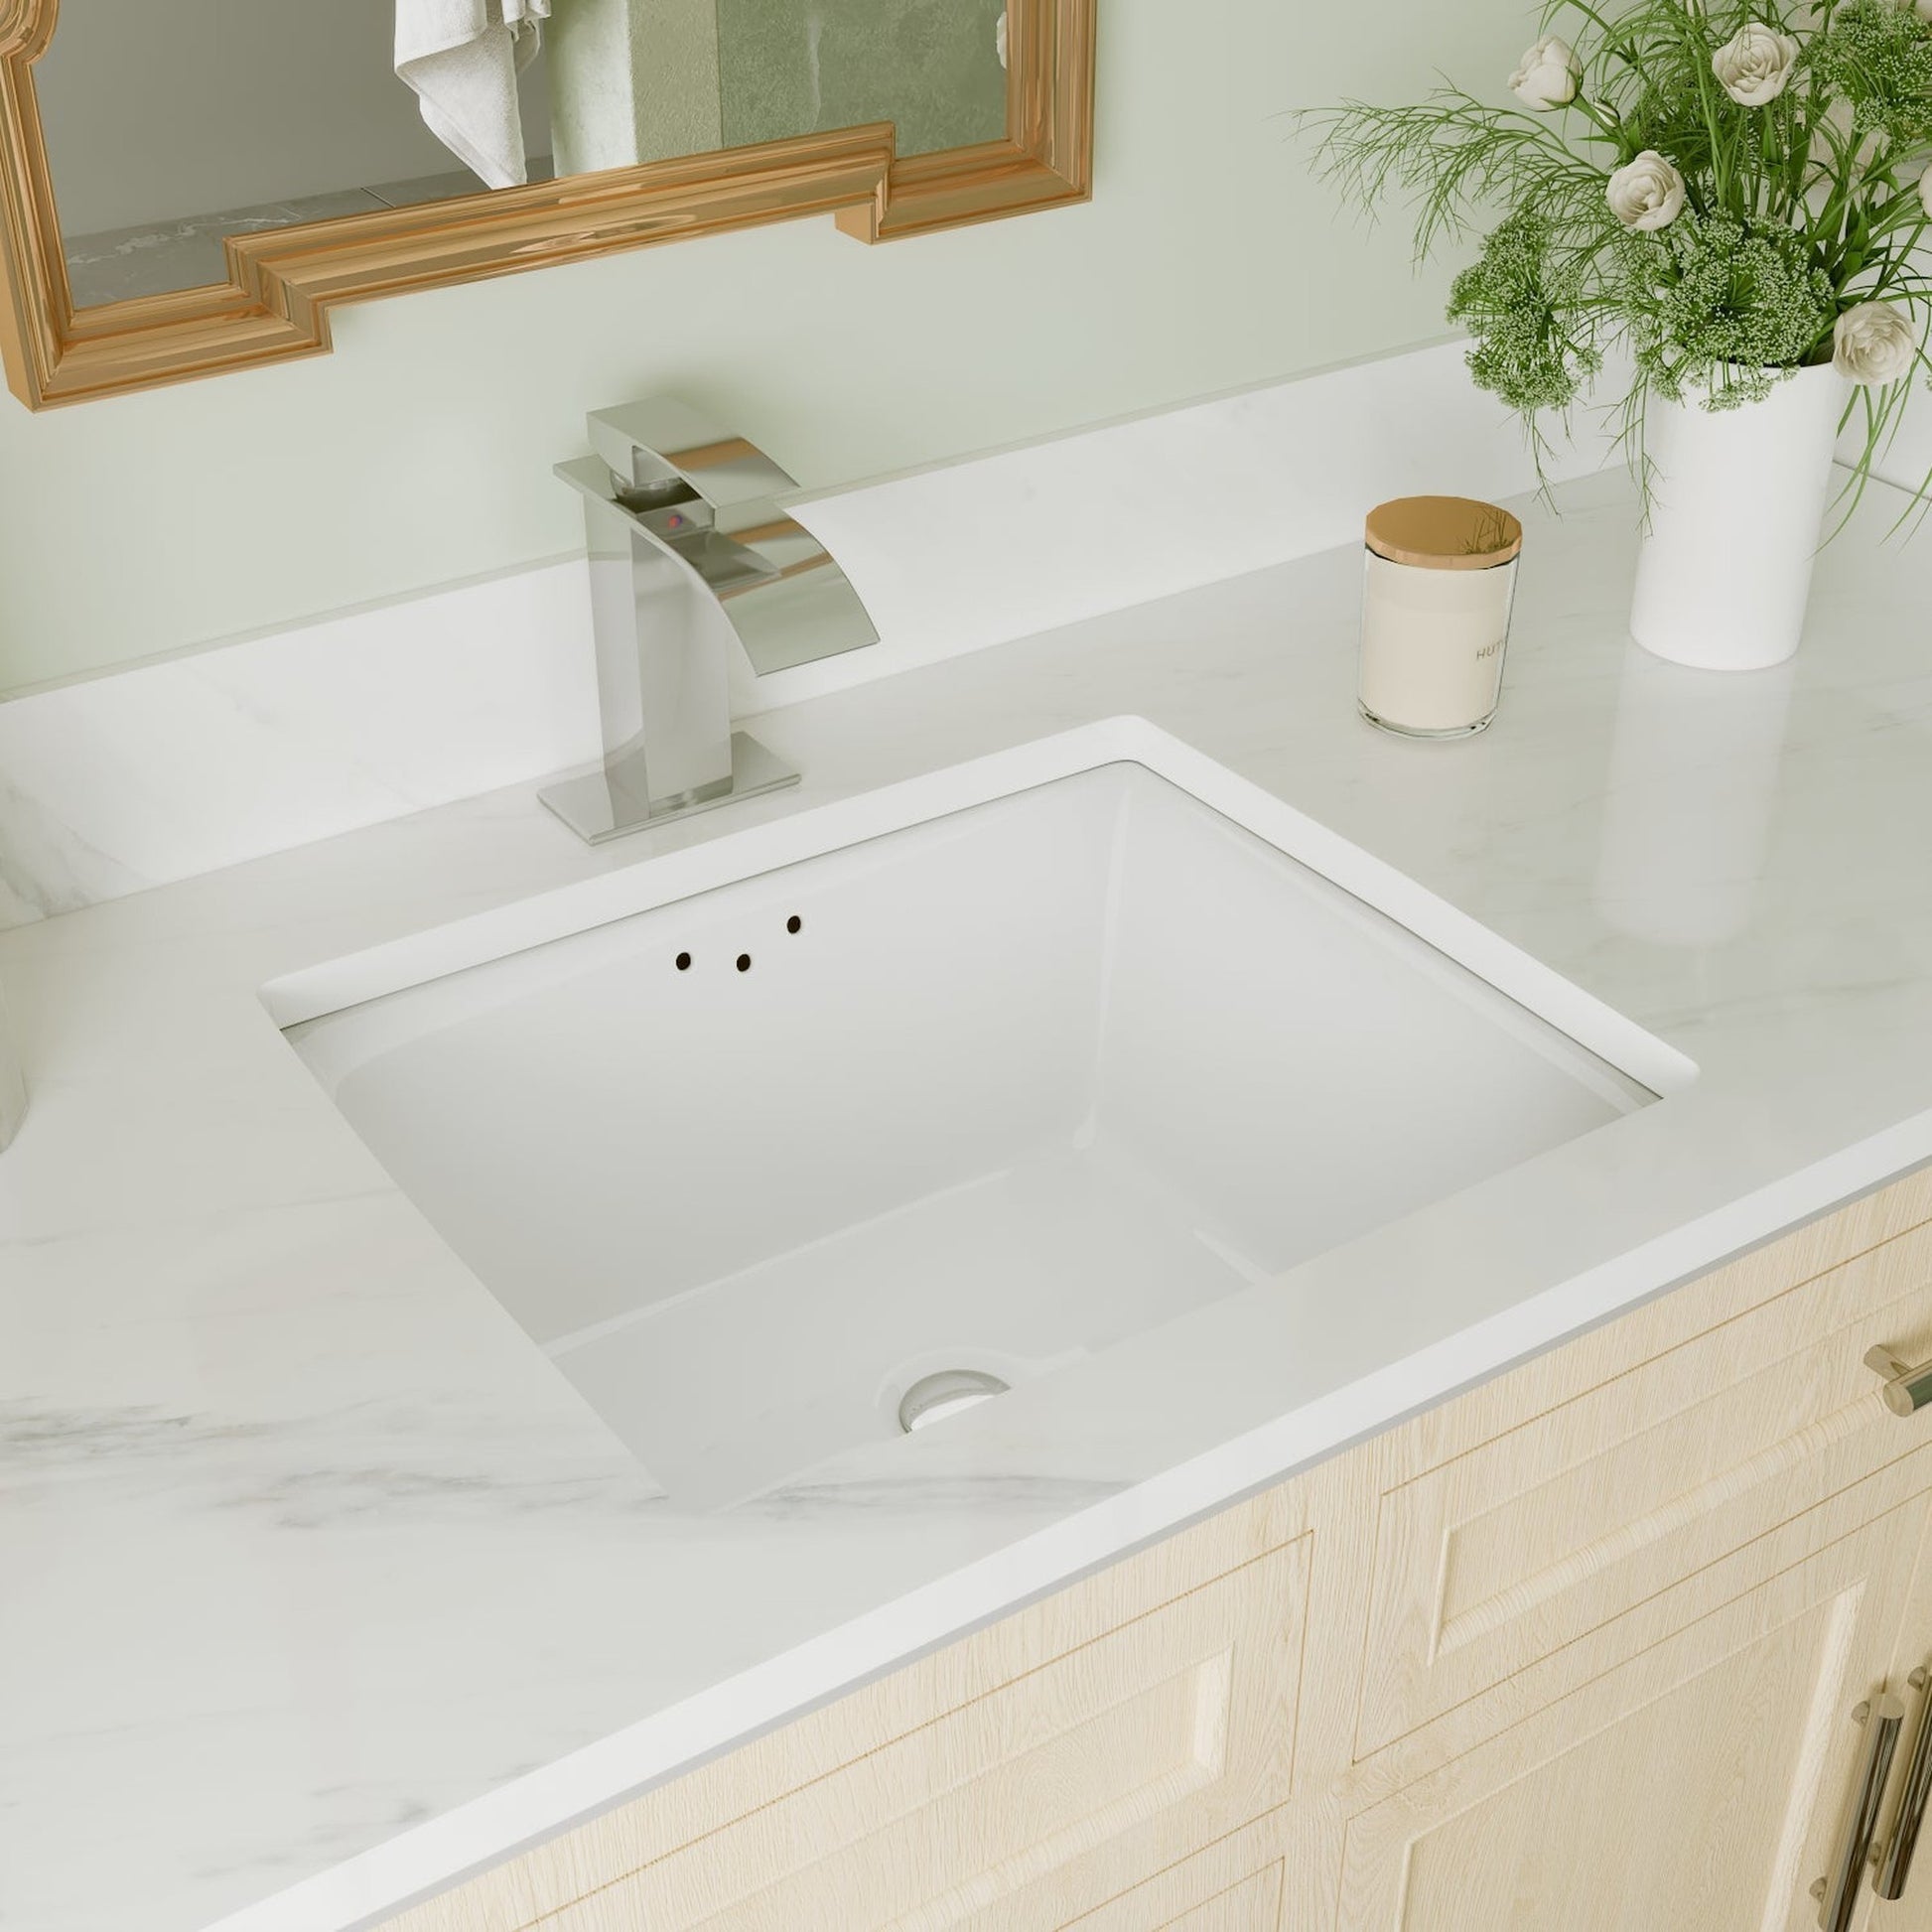 DeerValley Ursa 16" x 14" Rectangular White Undermount Bathroom Sink With Overflow Hole